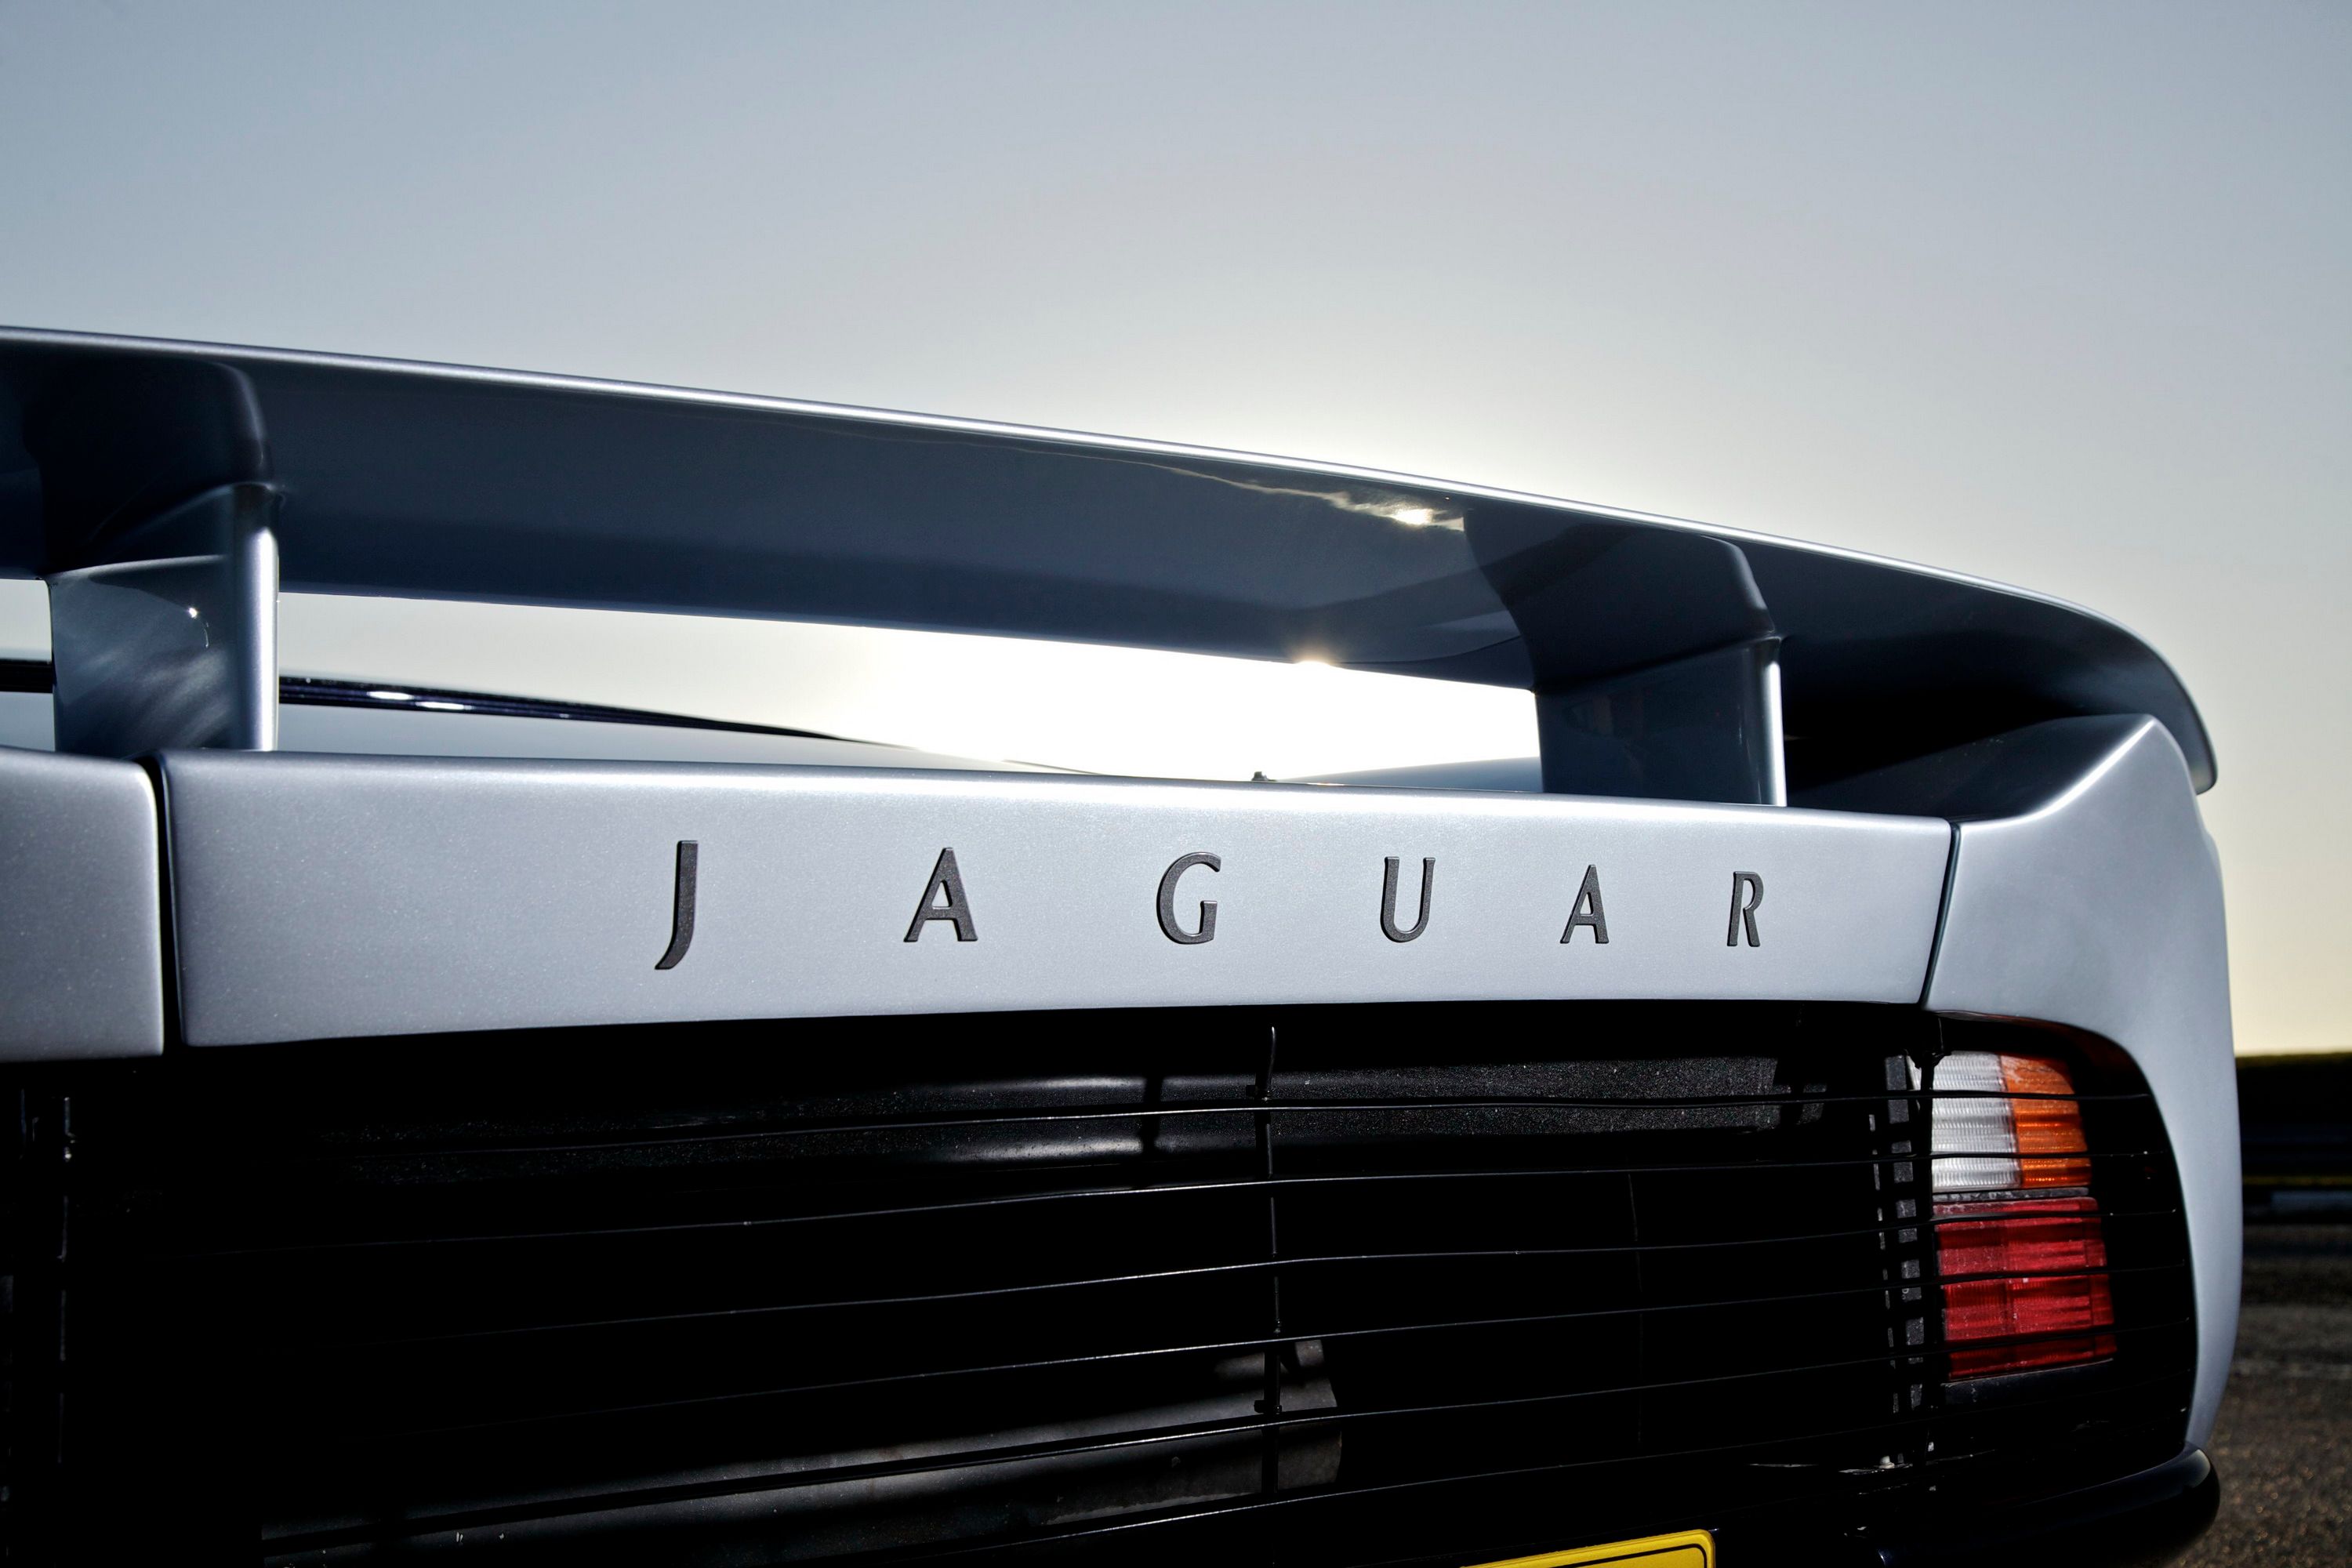 1992 - 1994 Jaguar XJ 220